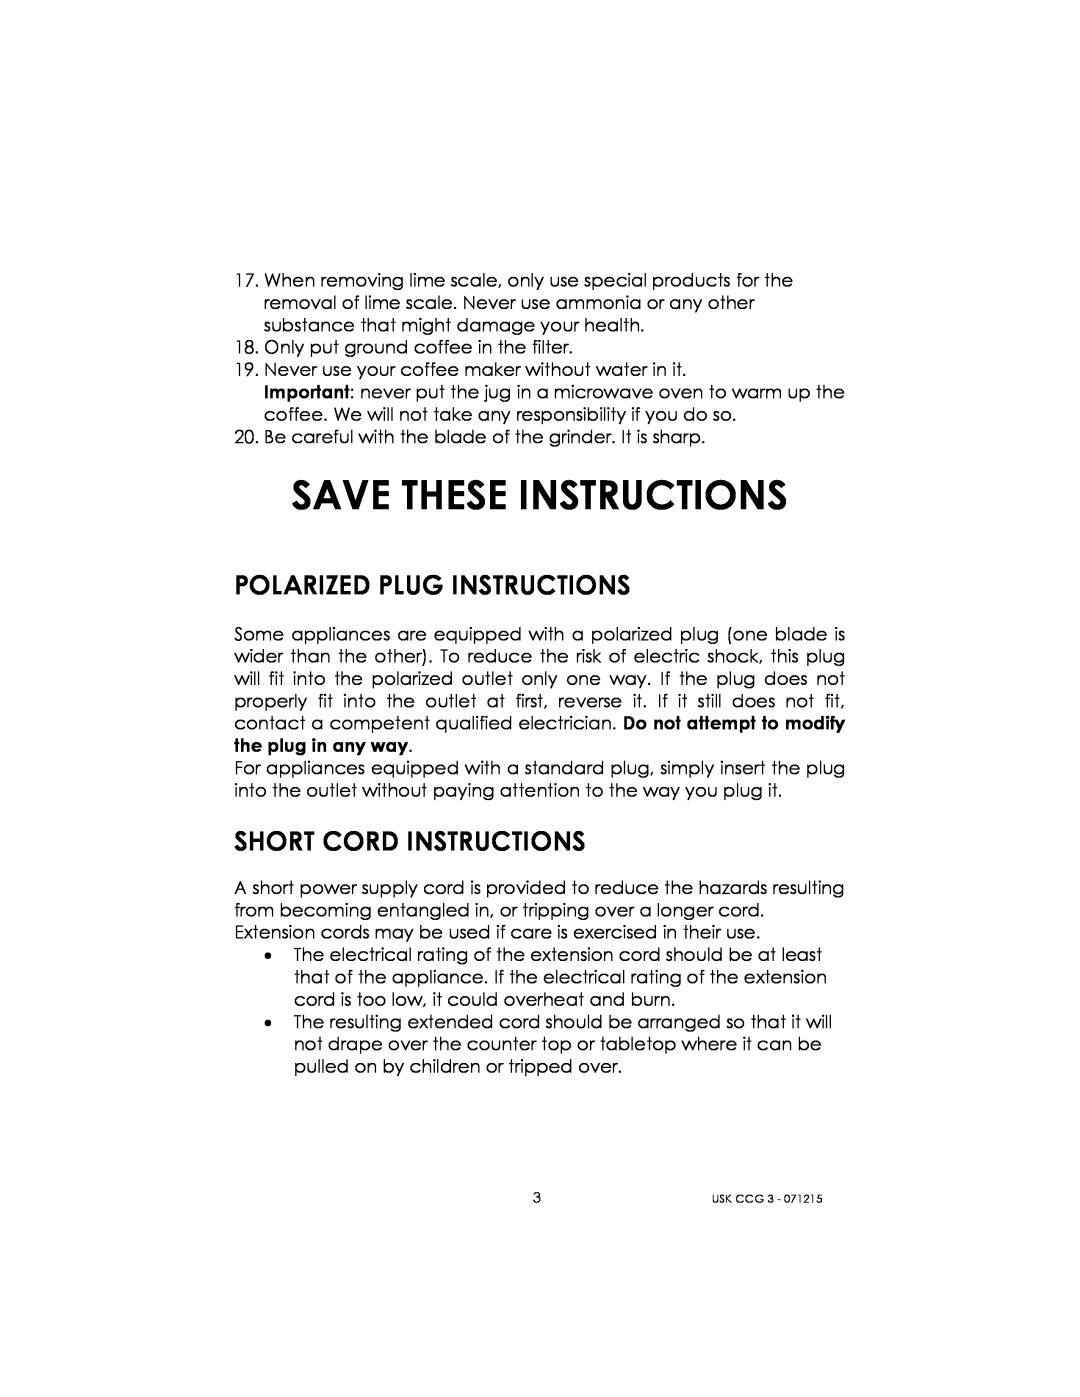 Kalorik USK CCG 3 manual Save These Instructions, Polarized Plug Instructions, Short Cord Instructions 